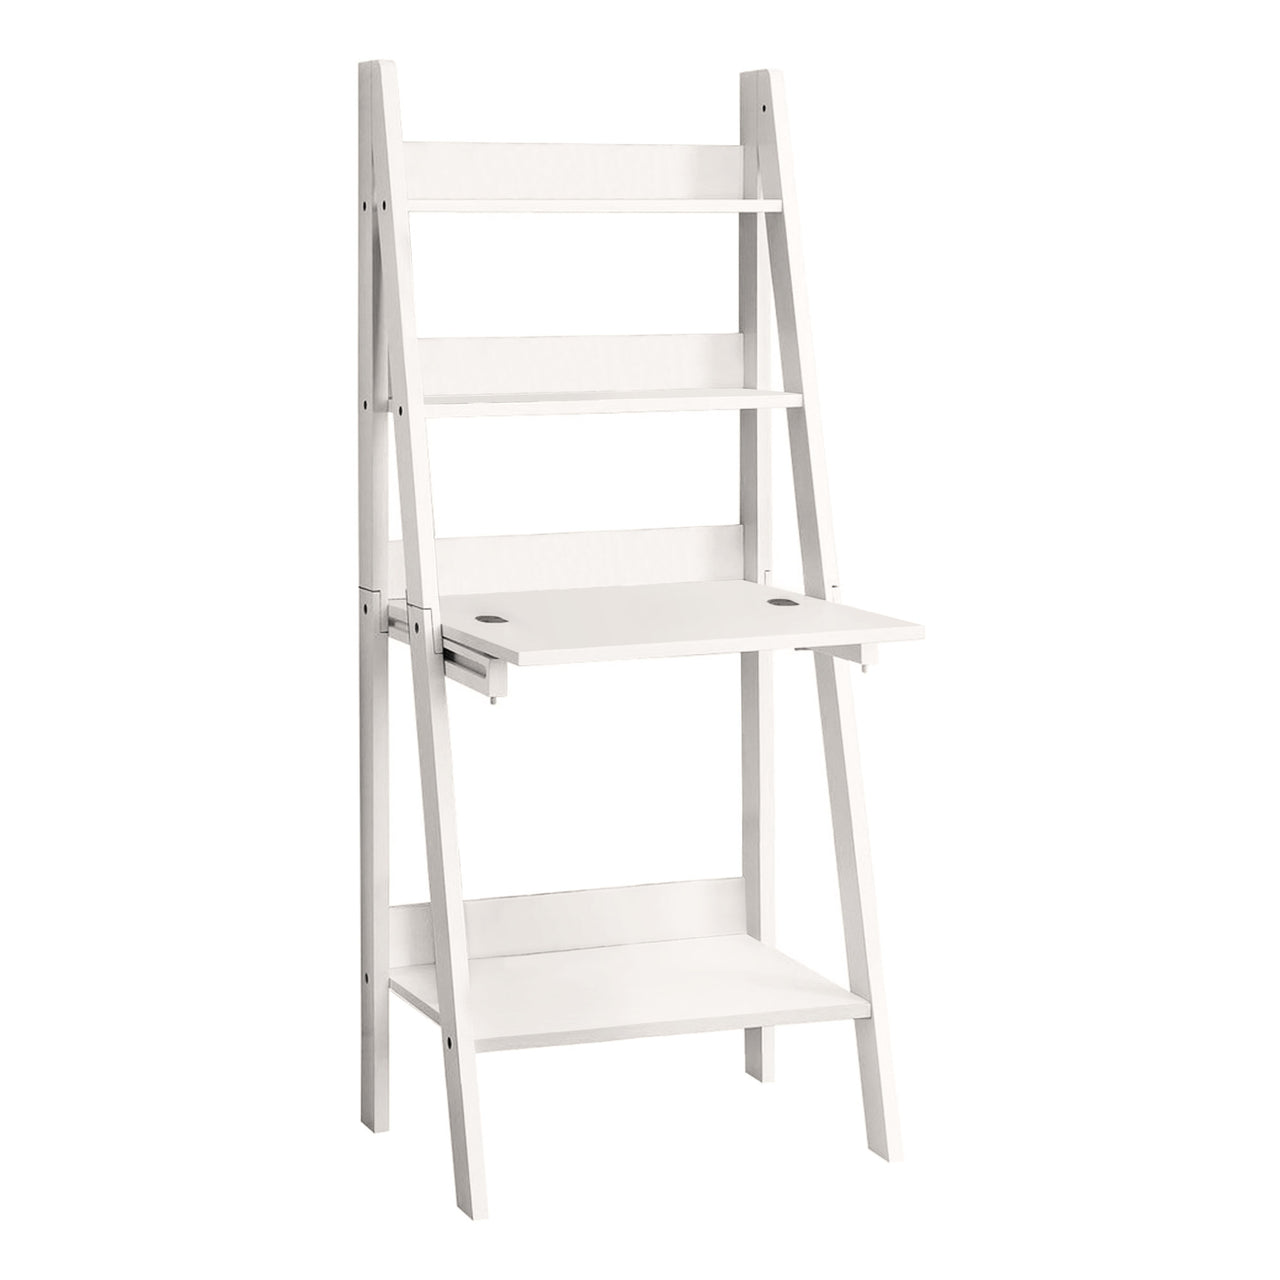 19" White Rectangular Ladder Desk-0